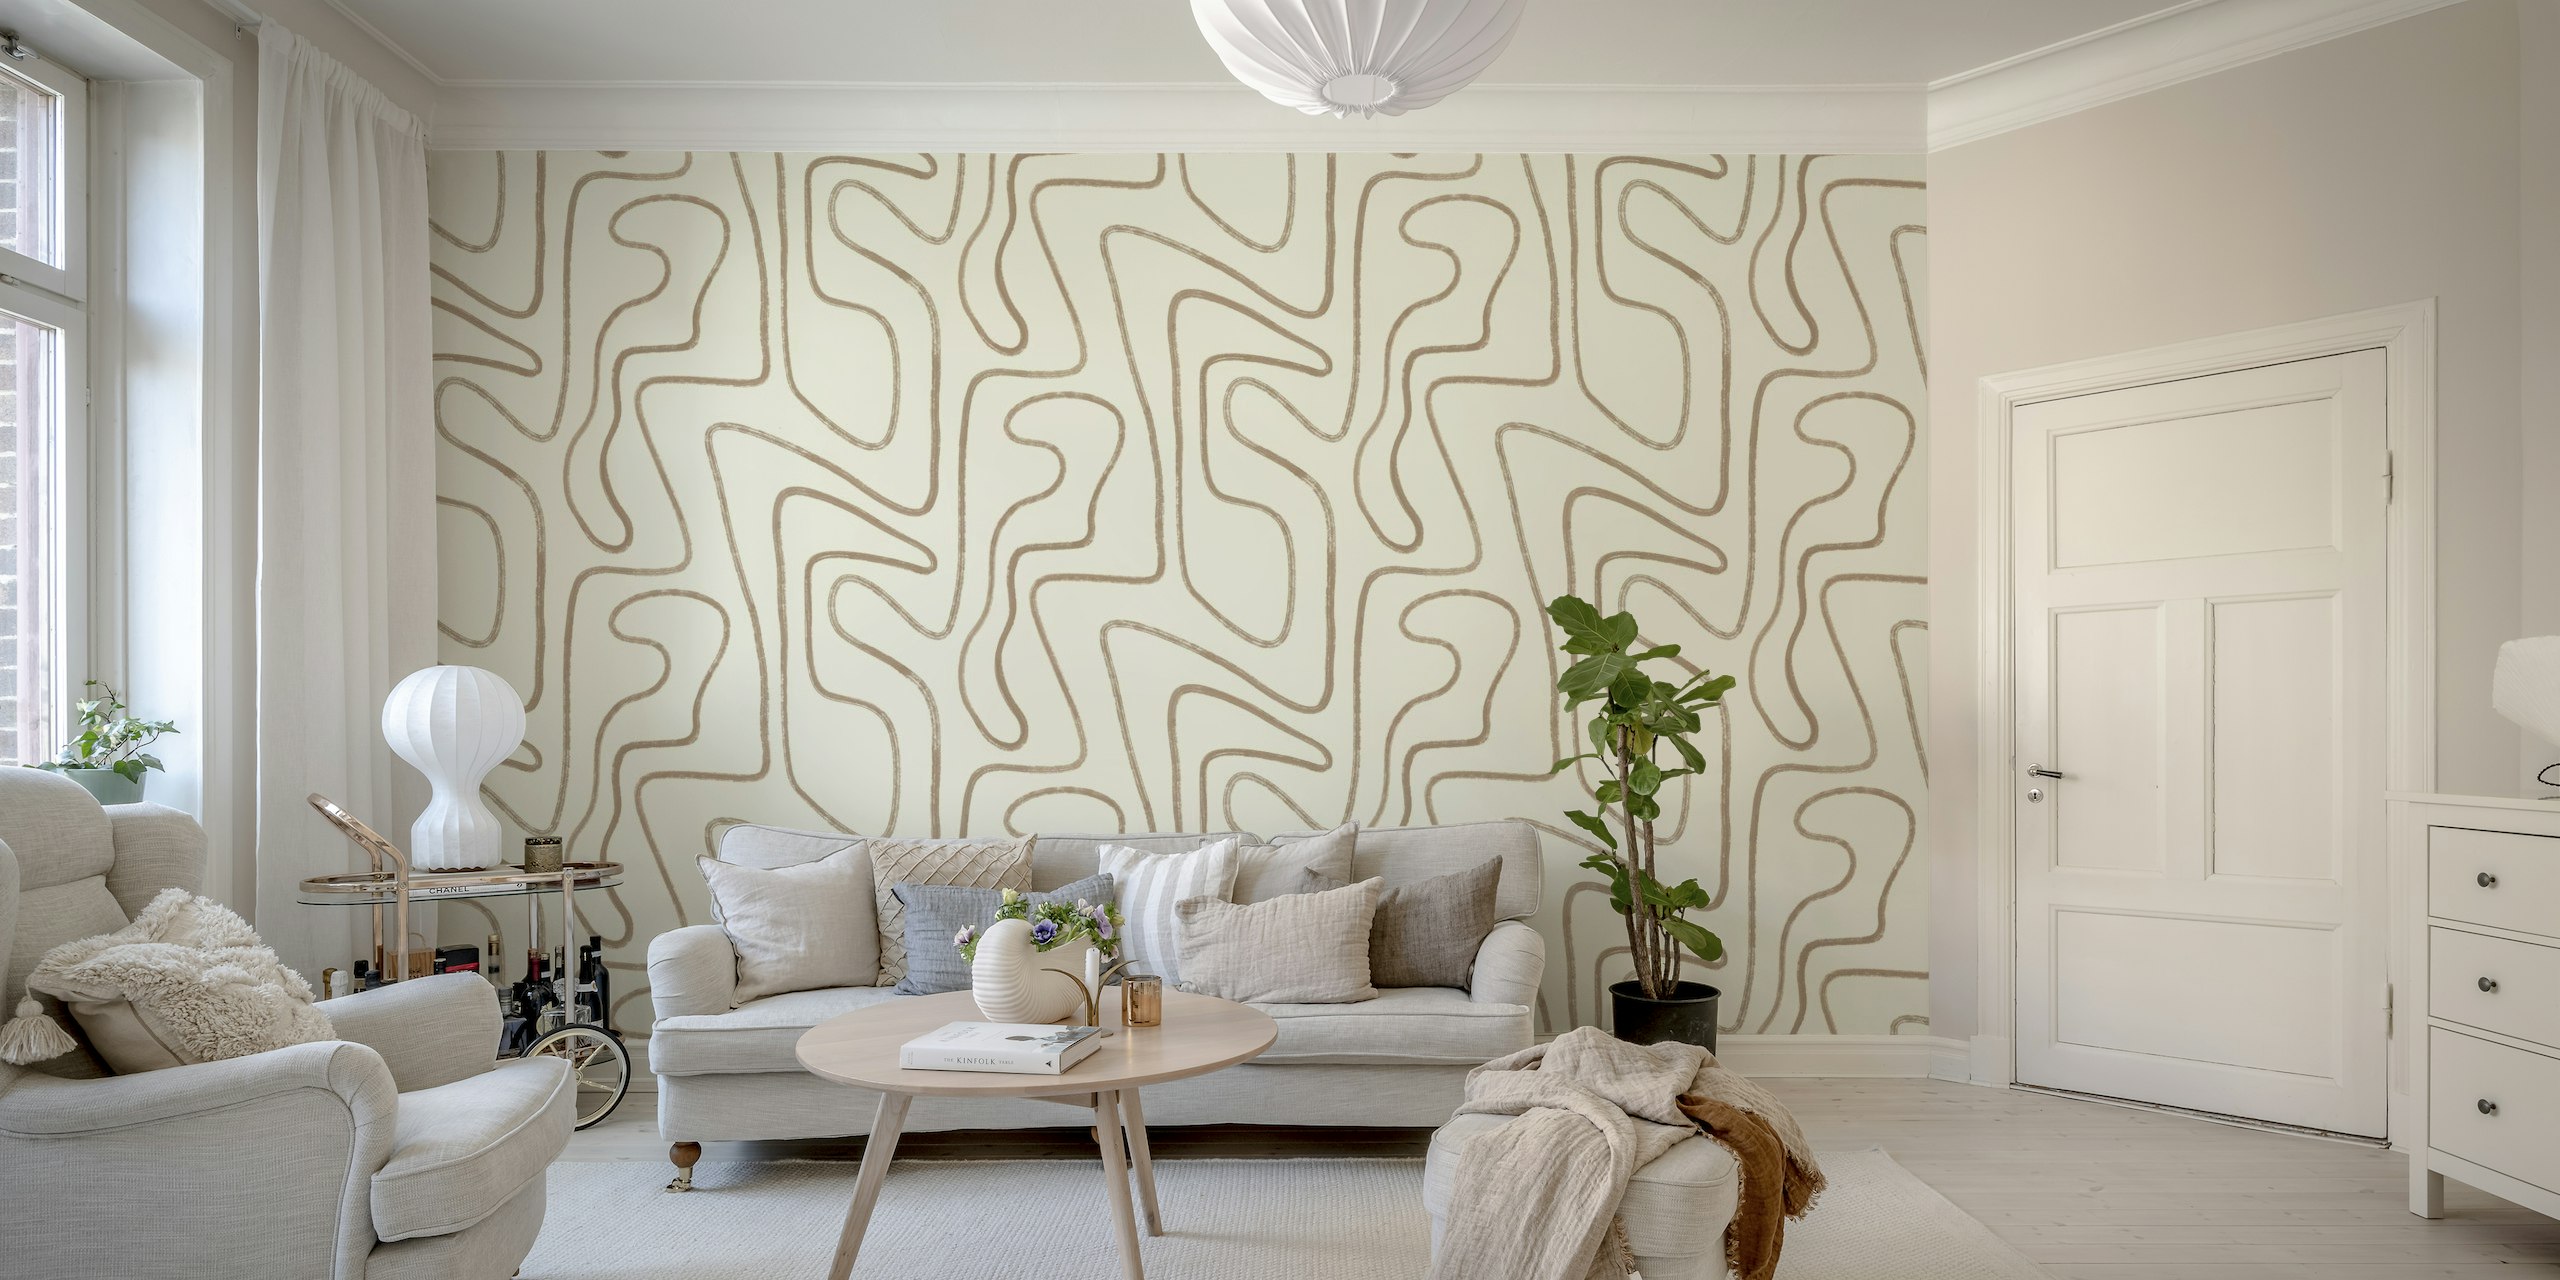 Mural de pared líneas abstractas dibujadas a mano en tonos tierra tostados